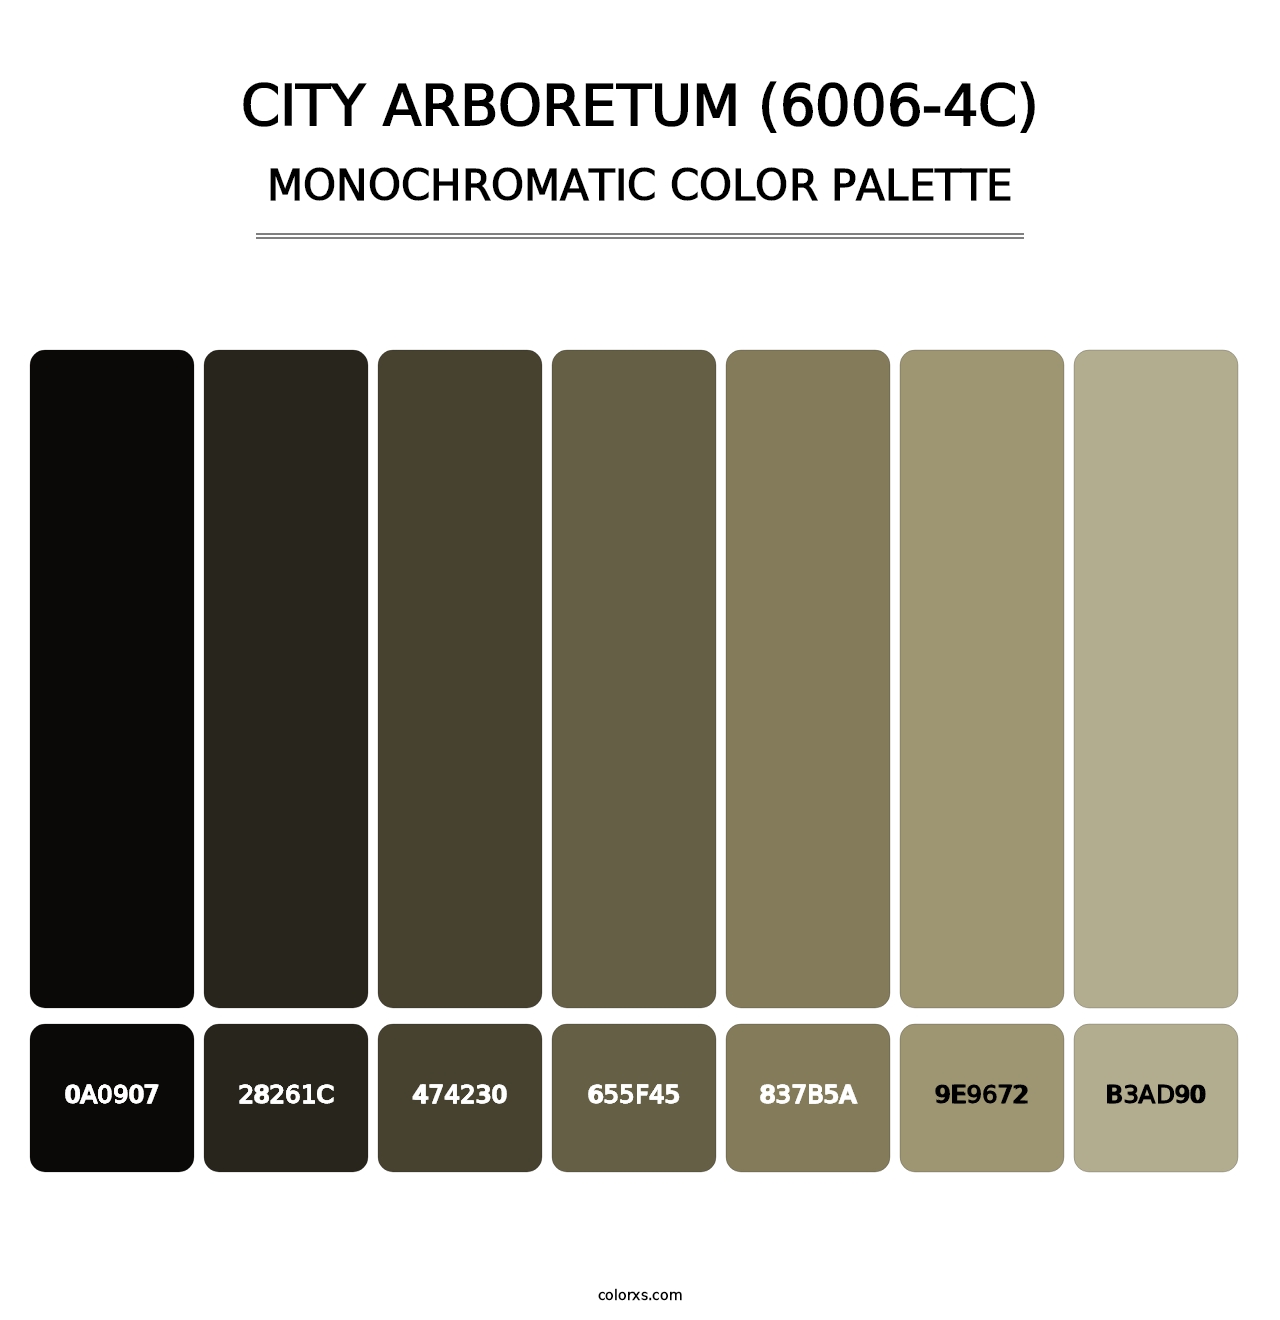 City Arboretum (6006-4C) - Monochromatic Color Palette